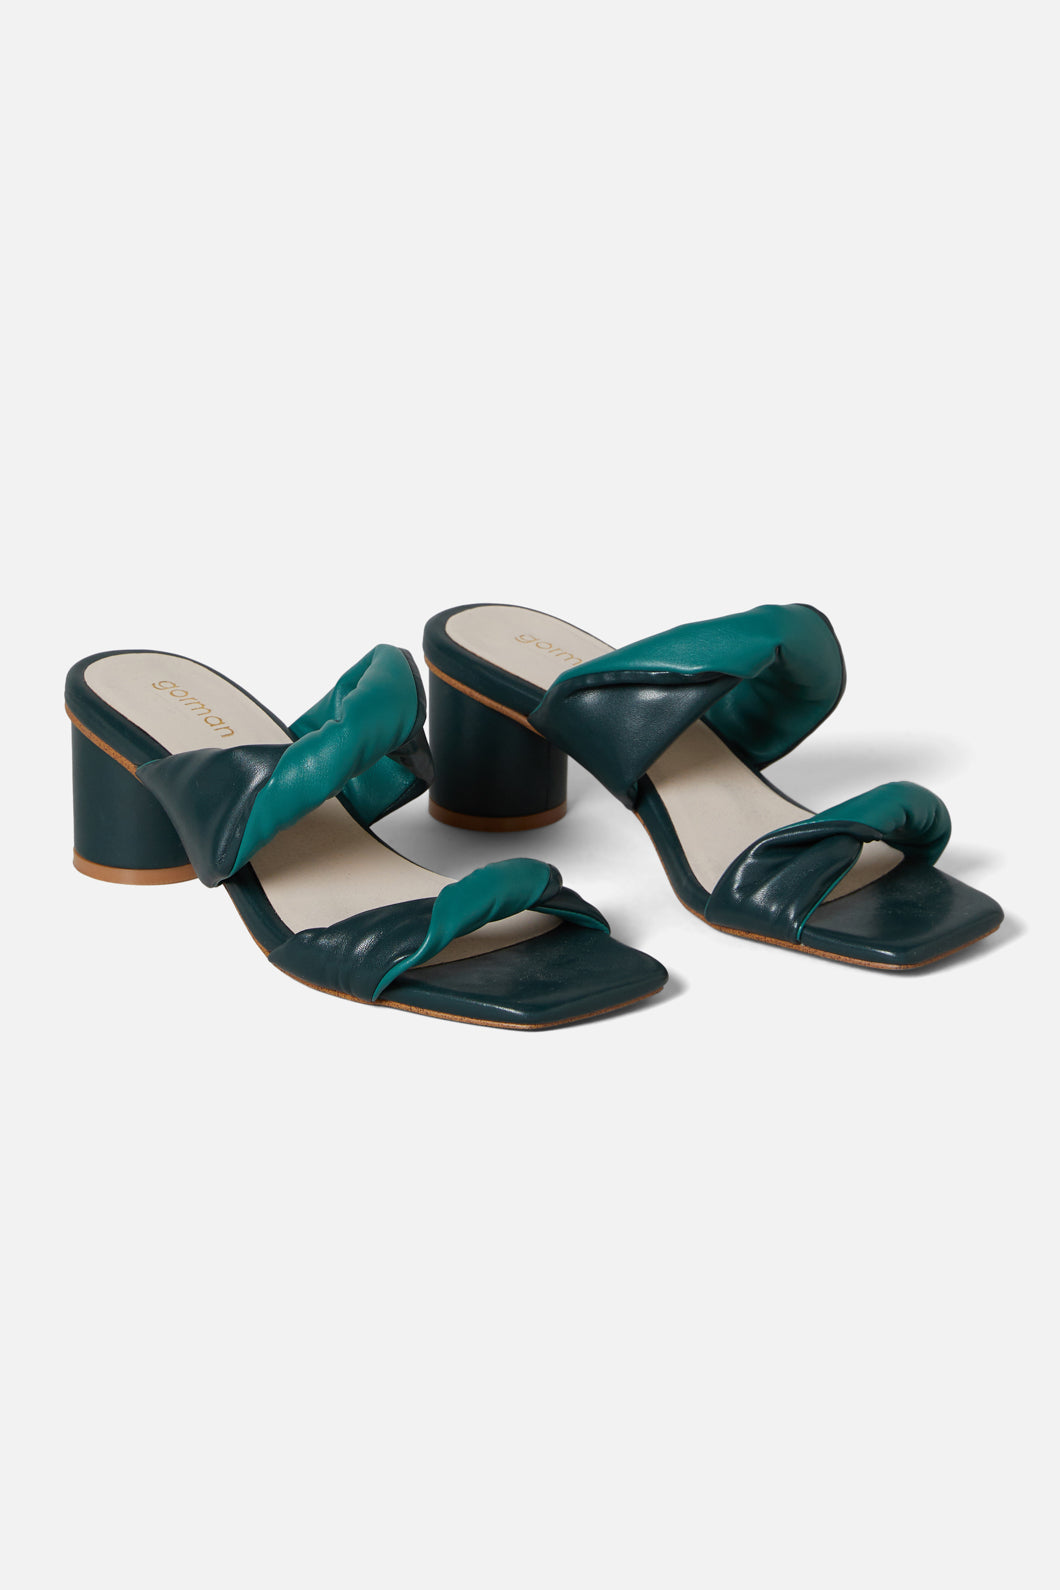 Wide Fit Strappy Block Heel Sandals | M&S NZ